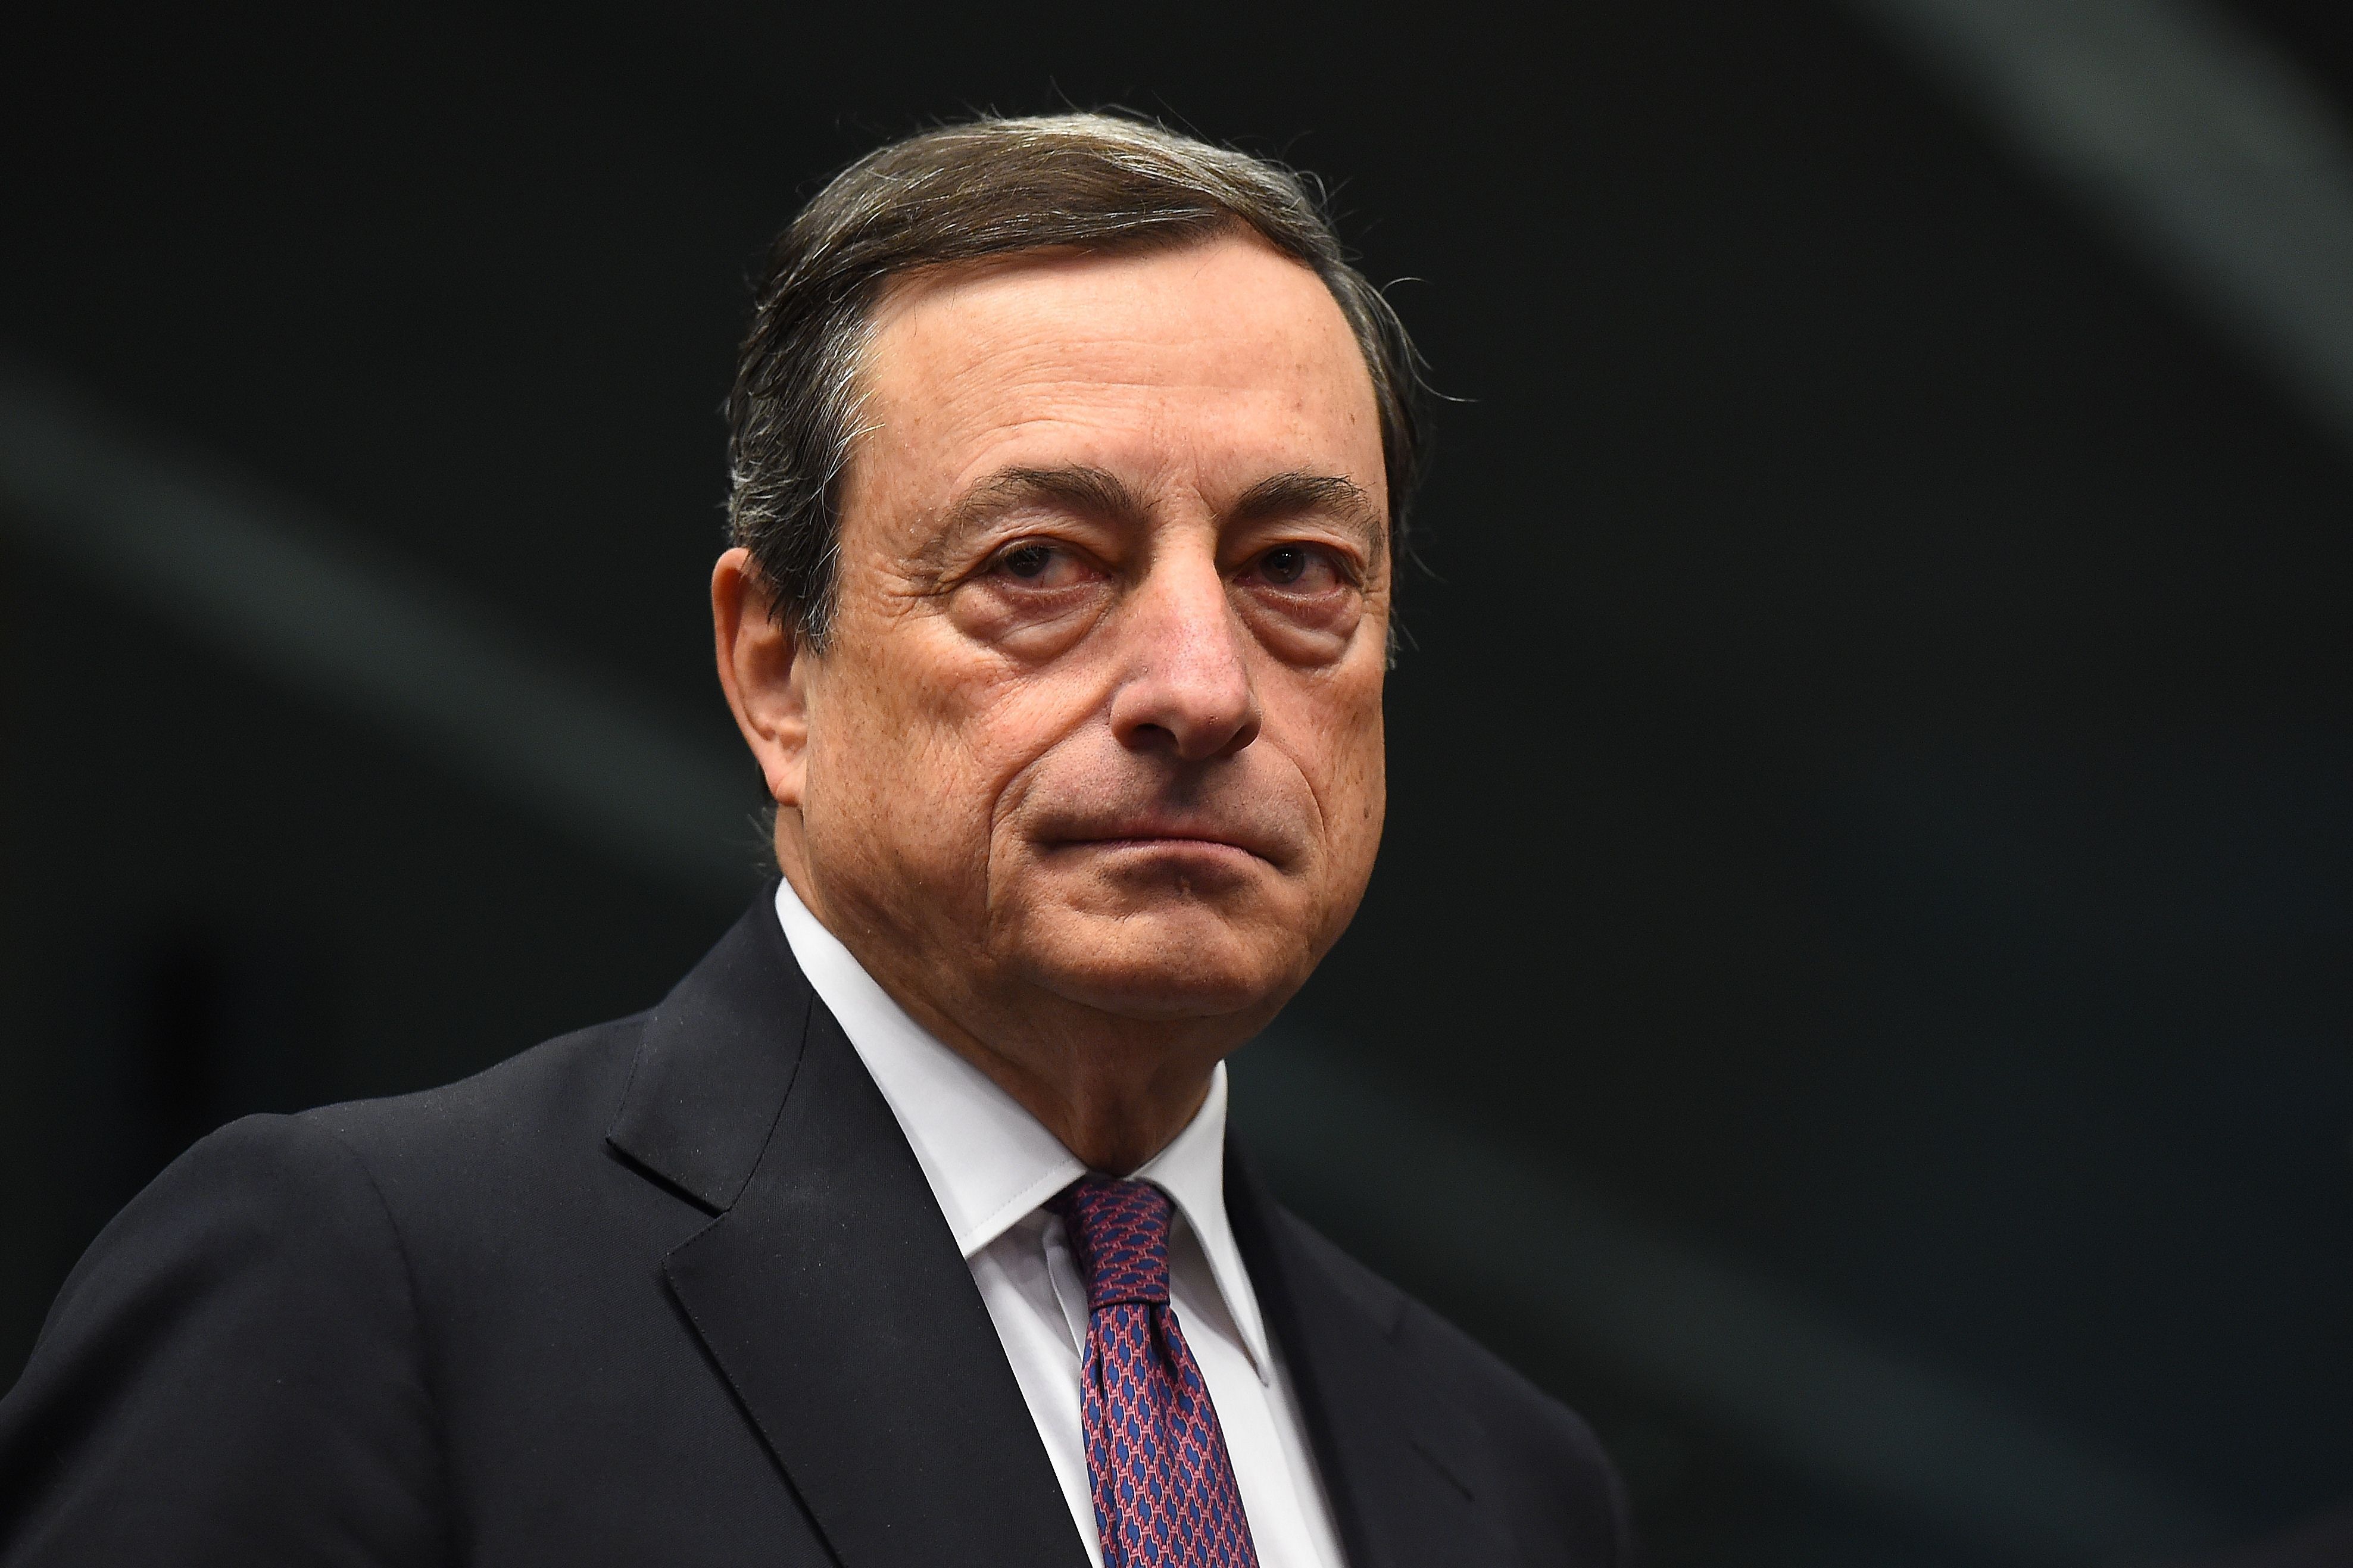 Cu maşini în flăcări pe străzile Frankfurtului, şeful BCE apără politicile de austeritate şi îndeamnă la unitate, la inaugurarea noului sediu 